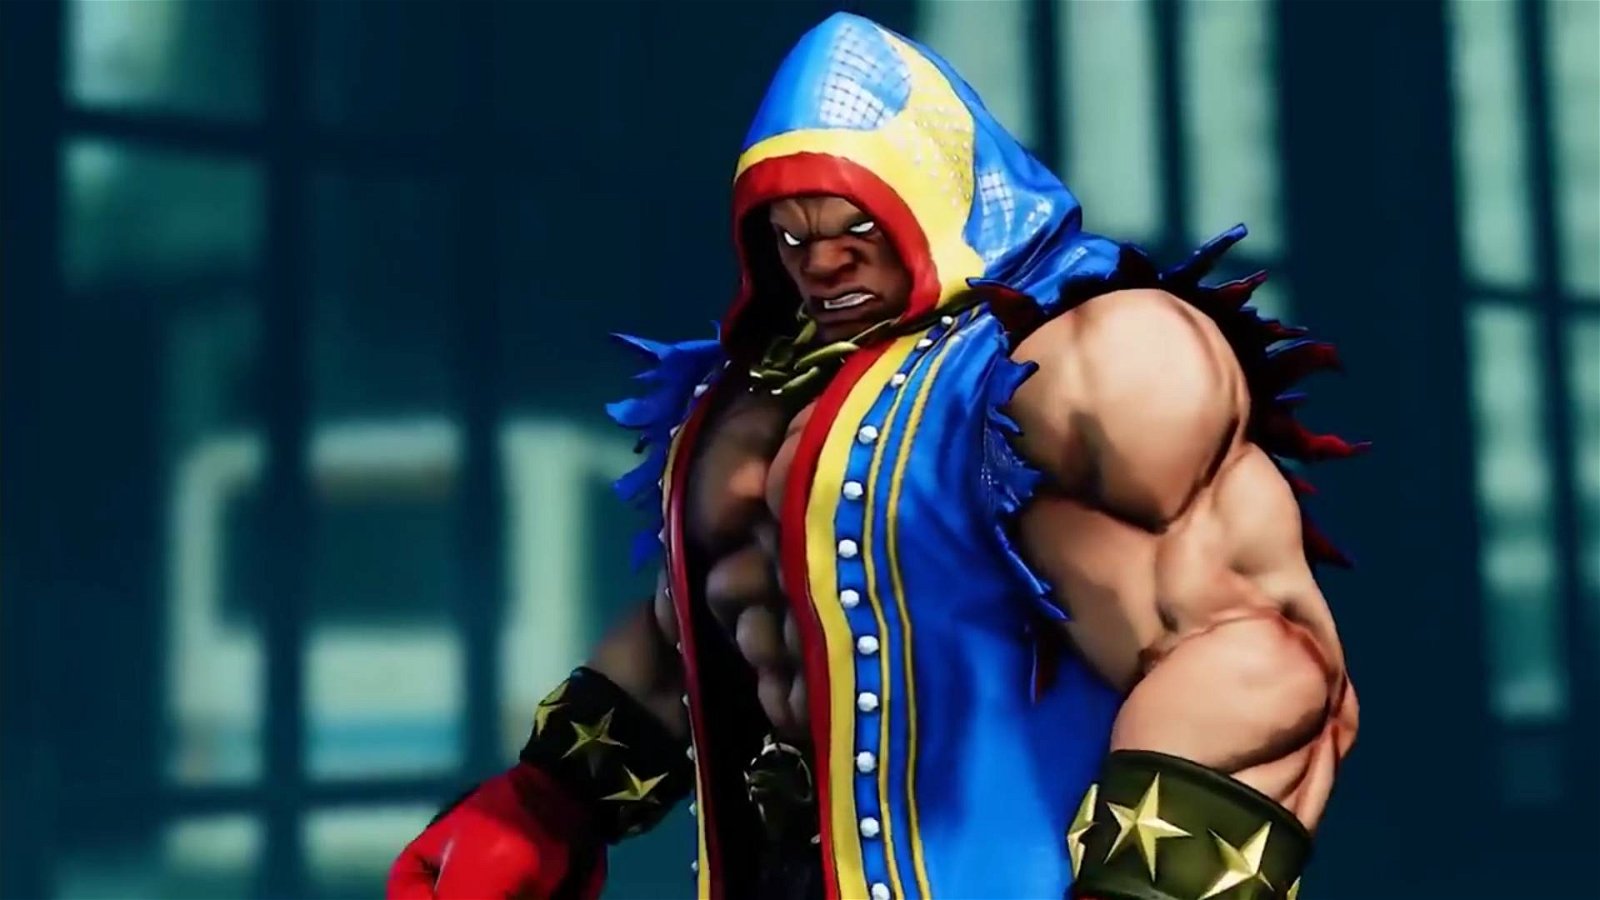 Immagine di Street Fighter 2: Mike Tyson ha scoperto ora del personaggio a lui ispirato